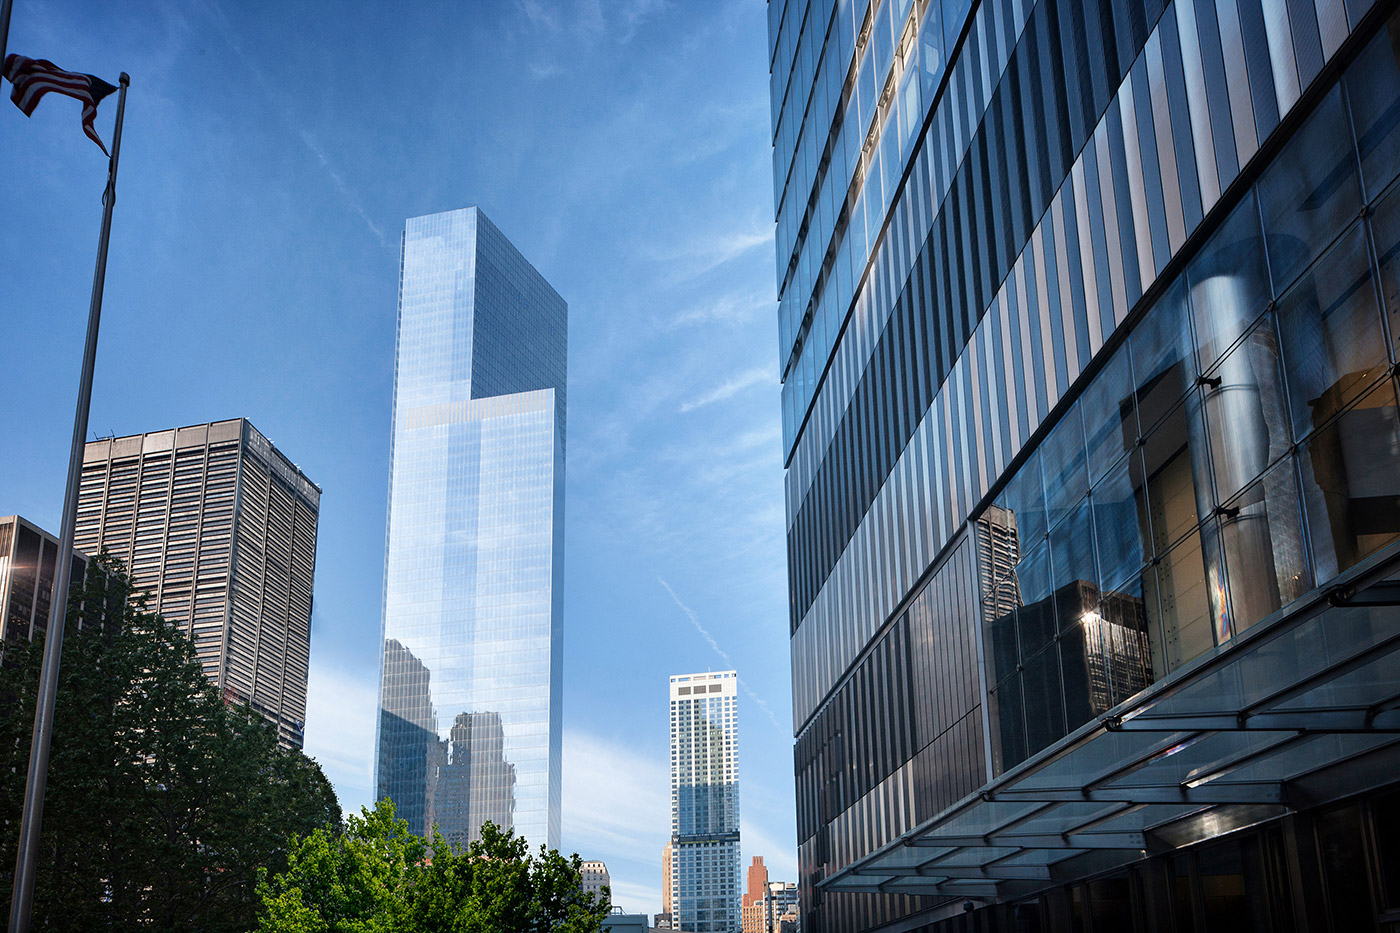 До 2001 года на&nbsp;Манхэттене уже существовало здание под&nbsp;названием 4 World Trade Center: так назывался построенный в&nbsp;1975 году девятиэтажный бизнес-центр, офисы в&nbsp;котором занимали Deutsche Bank и&nbsp;Нью-Йоркская торговая палата. Самолеты не&nbsp;врезались в&nbsp;этот дом во&nbsp;время террористической атаки 11 сентября 2001 года, однако&nbsp;обрушение соседних небоскребов привело к&nbsp;повреждениям здания и&nbsp;власти решили снести первый 4 World Trade Center
